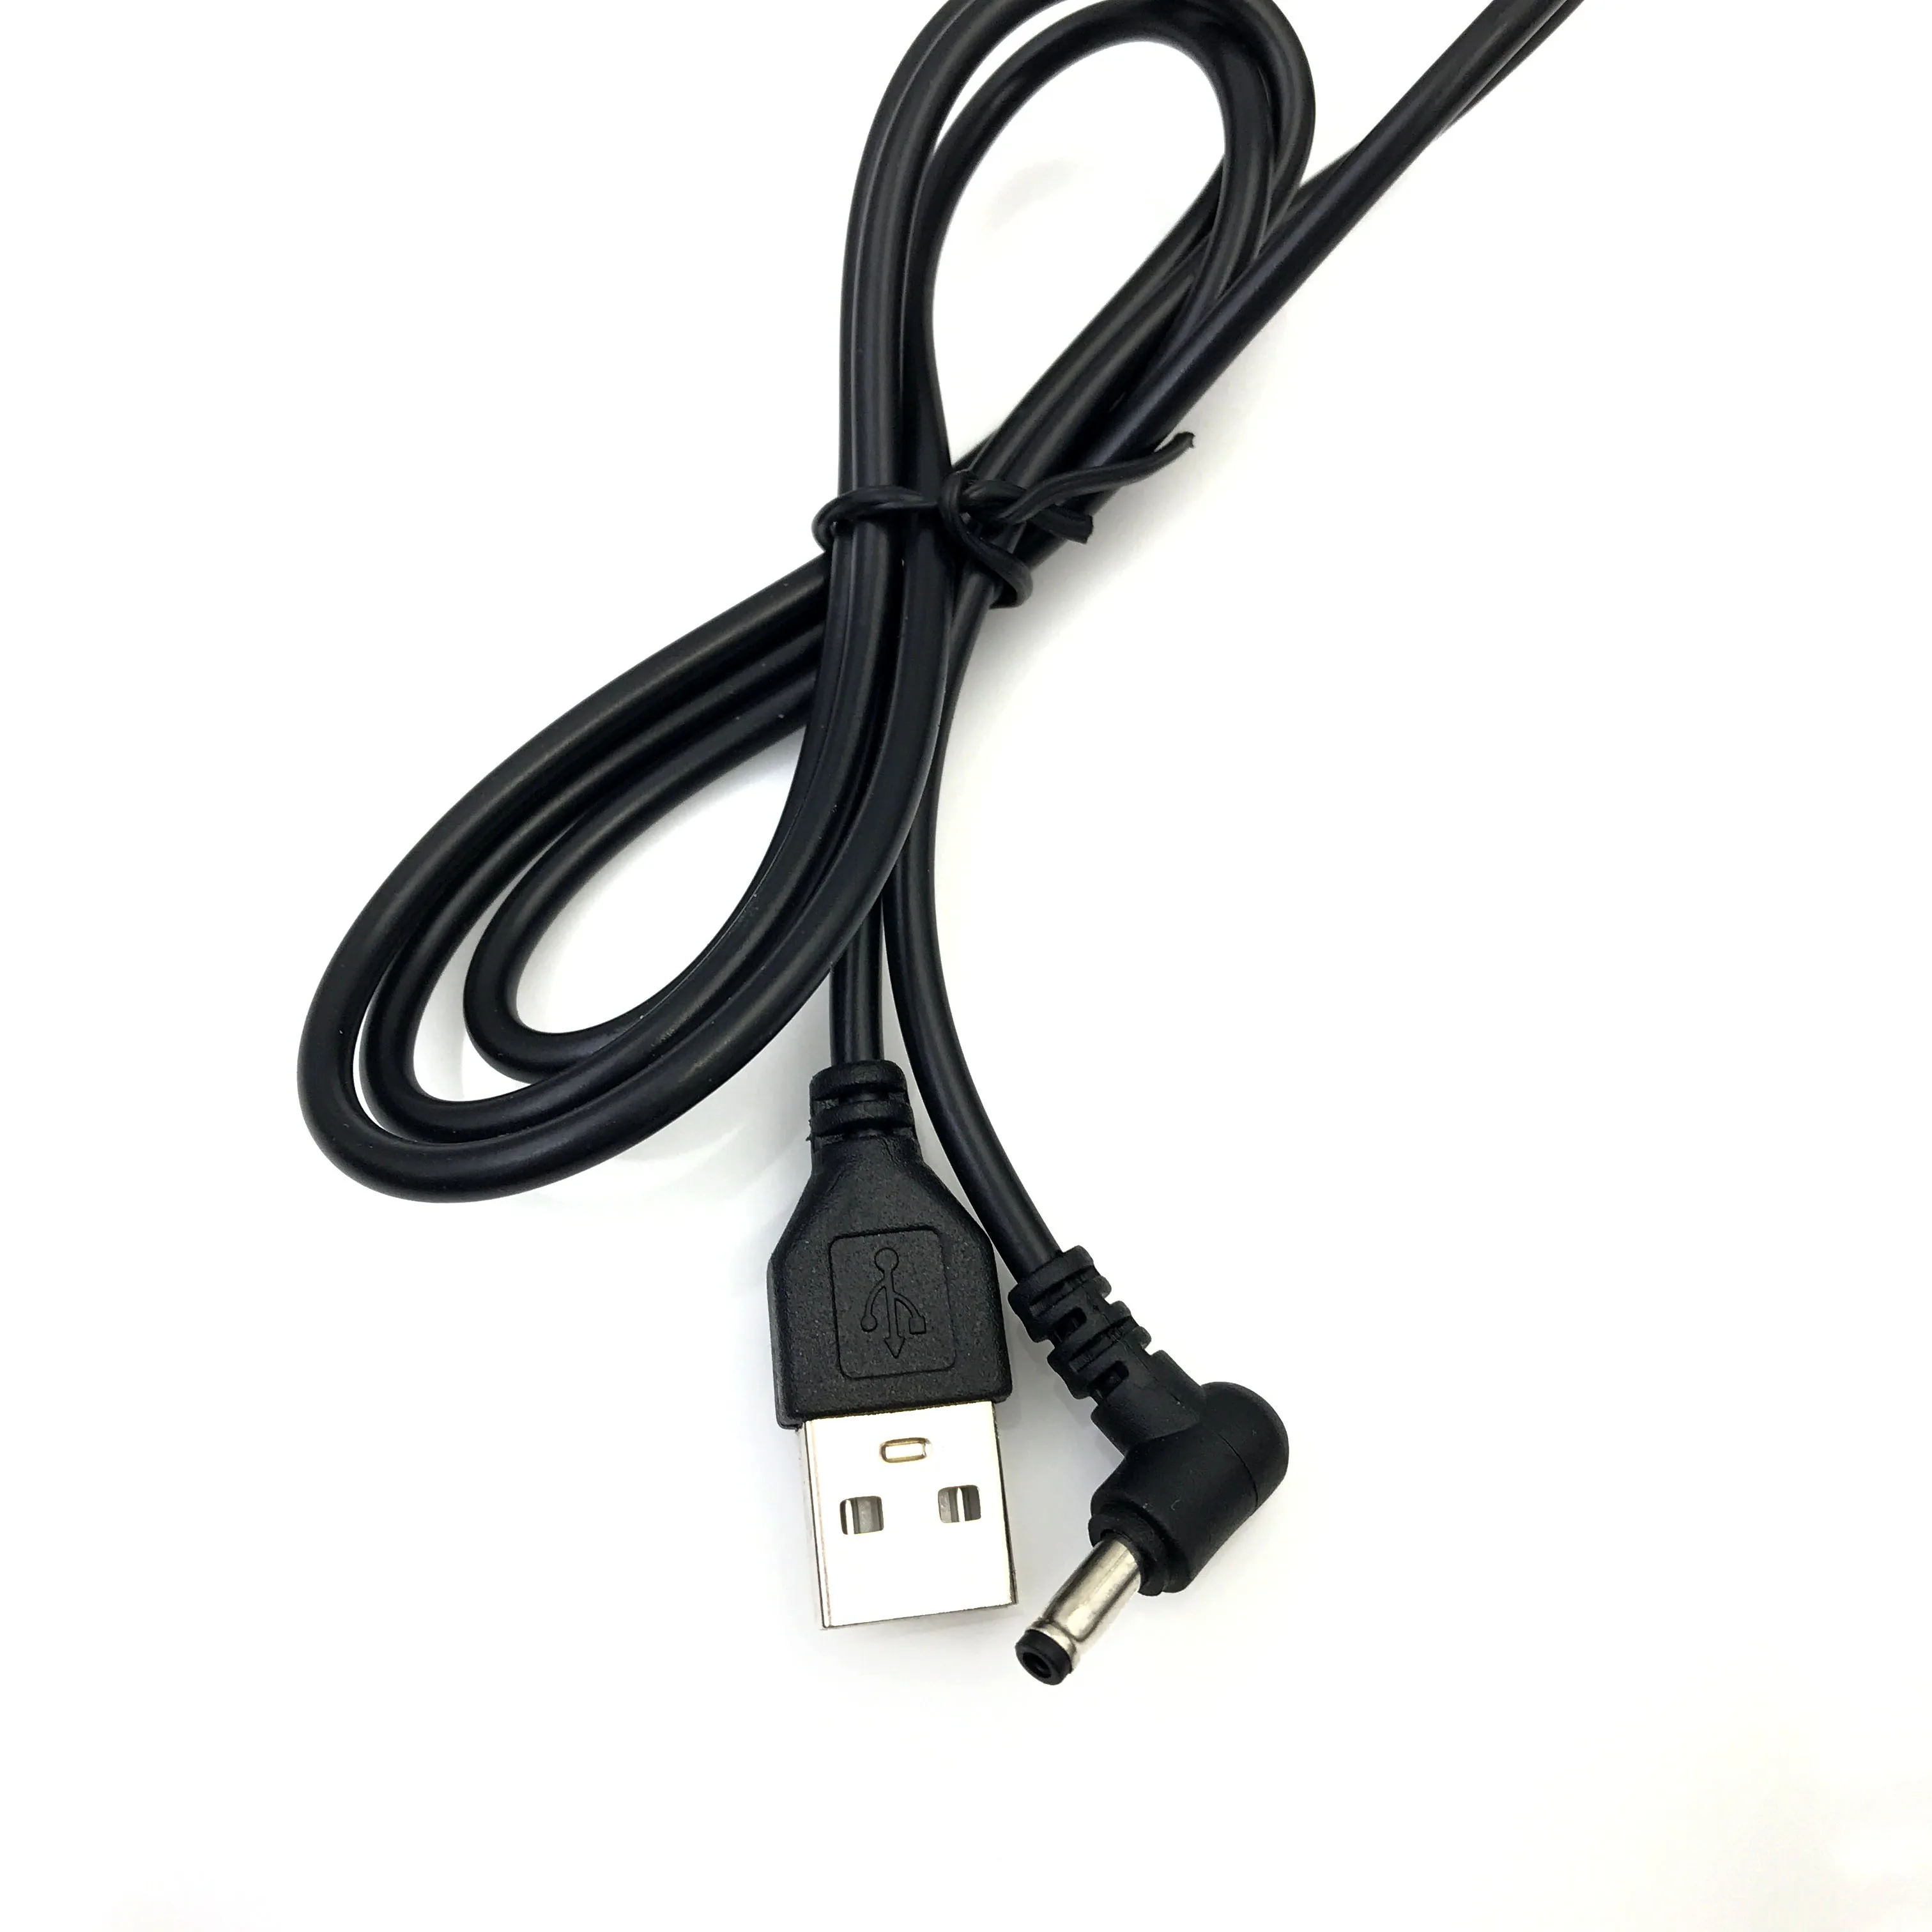 Zadajte Male USB Obrátiť na JEDNOSMERNÝ prúd Samec Konektor Jack Adaptér 90 Stupňov Muž 3,5 mm x 1.35 mm Power Converter Kábel, Kábel USB na 3,5*1.35 2